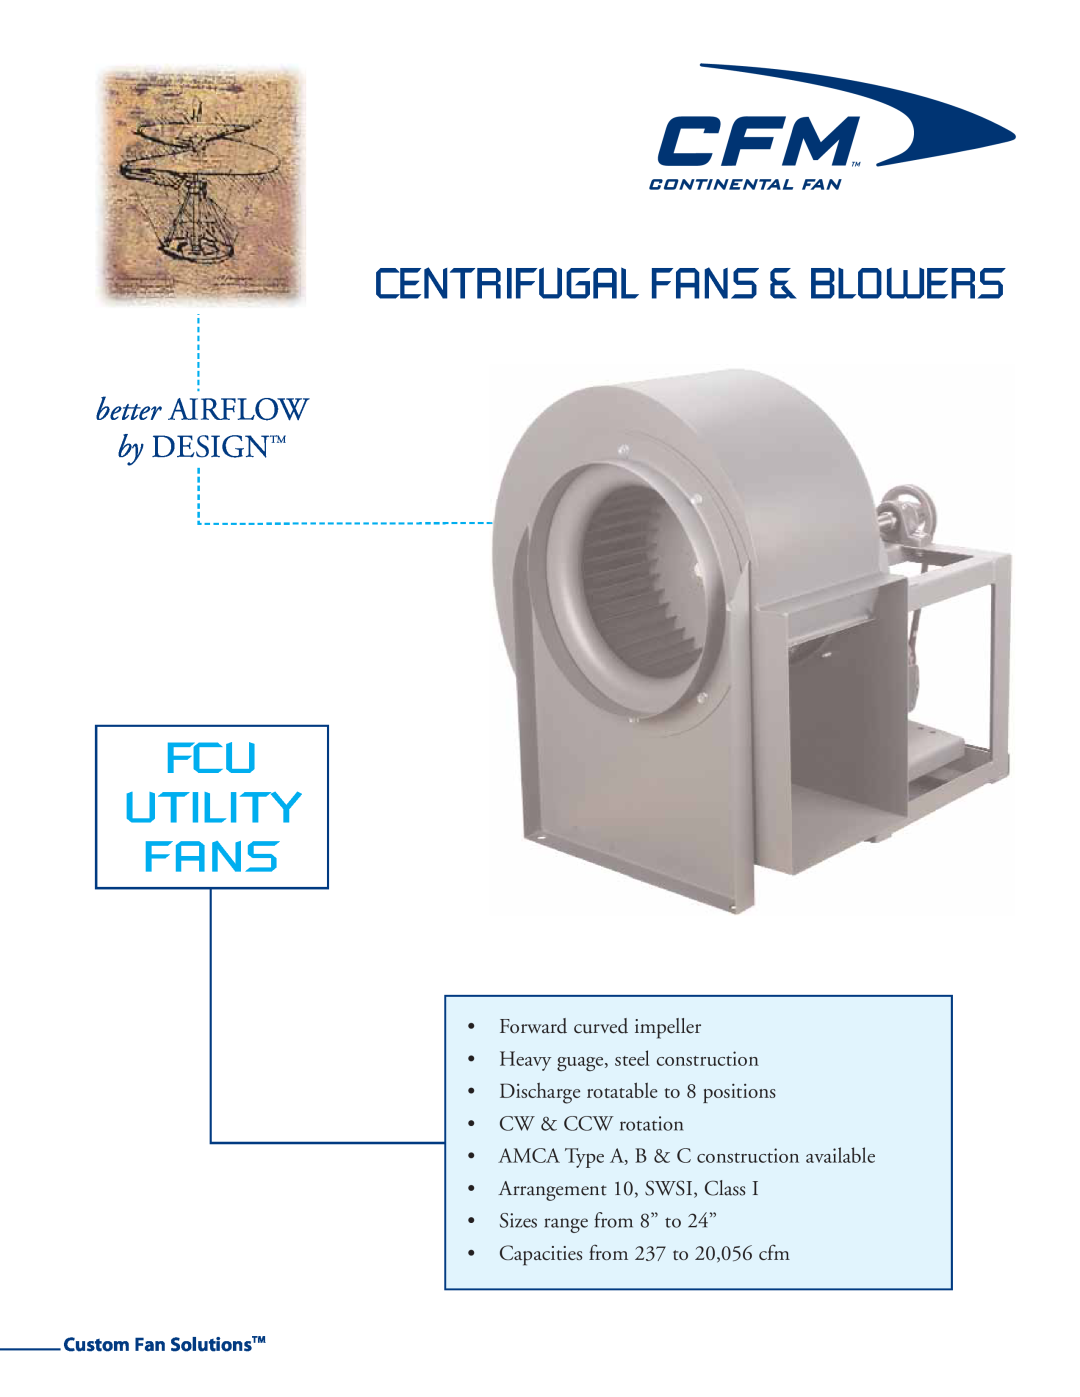 CFM FCU-11, FCU-09, FCU-08 manual Centrifugal Fans & Blowers, Fcu Utility Fans, better AIRFLOW, by DESIGNTM, 953-4%52549 